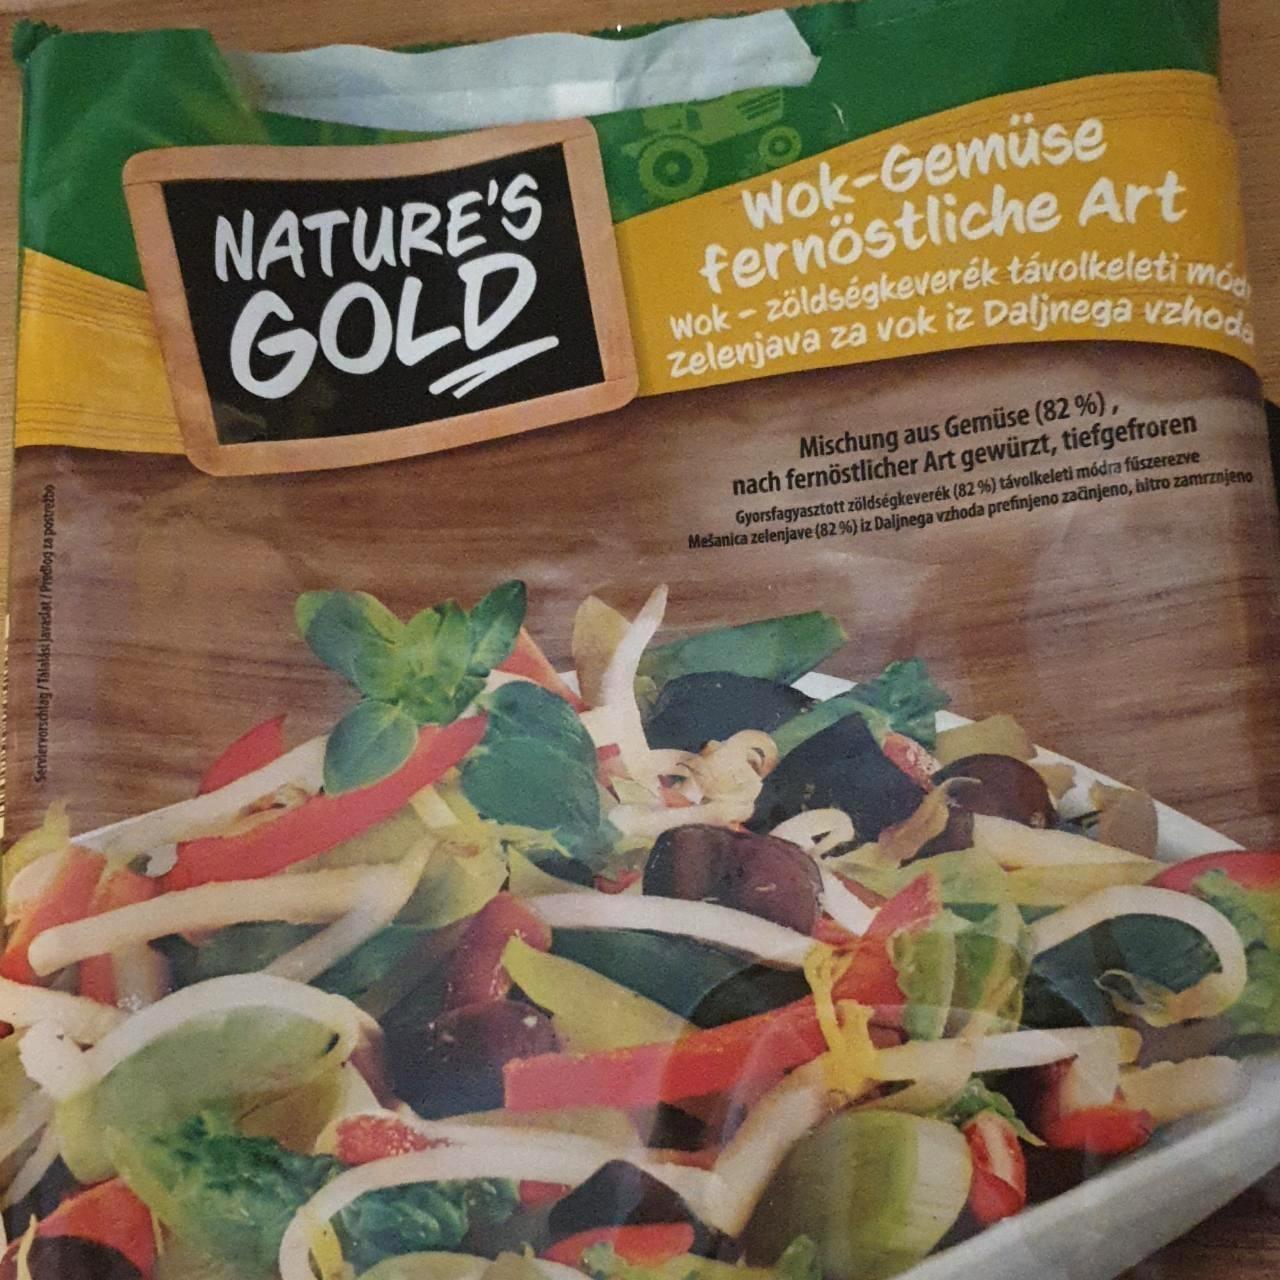 Képek - Serpenyős zöldségek wok Nature's Gold